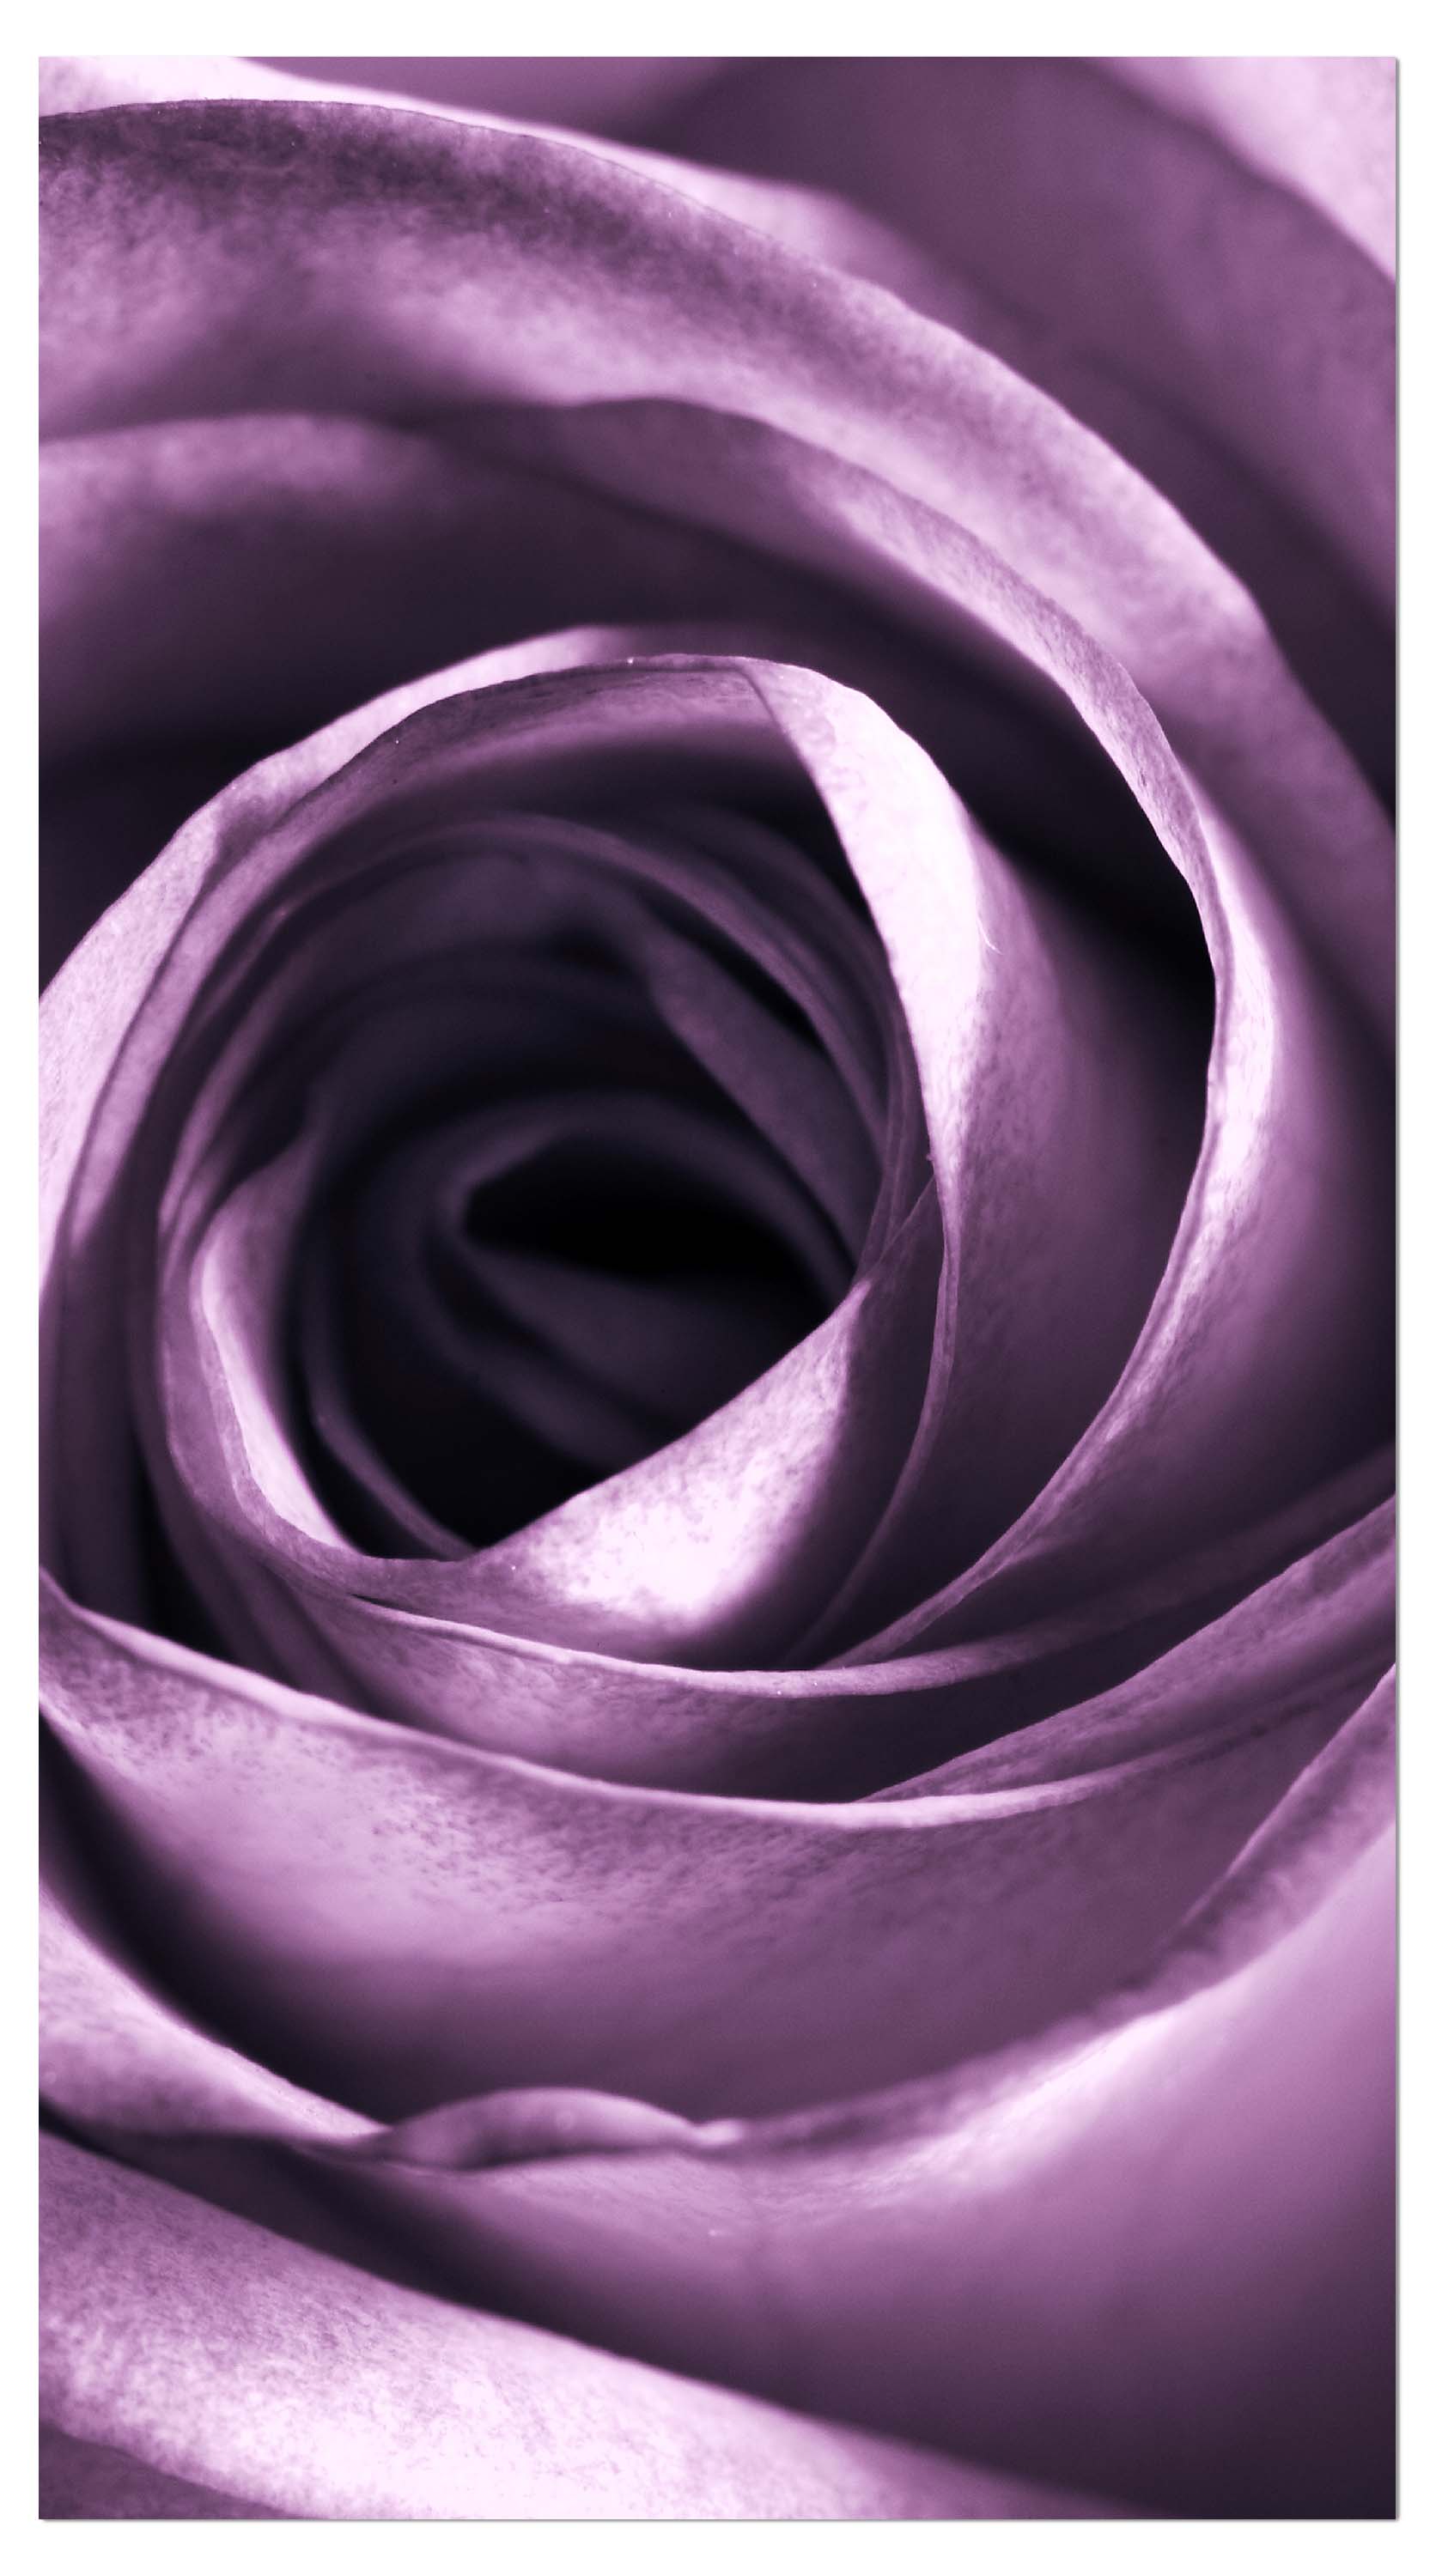 Garderobe violette Rose M0051 entdecken - Bild 4